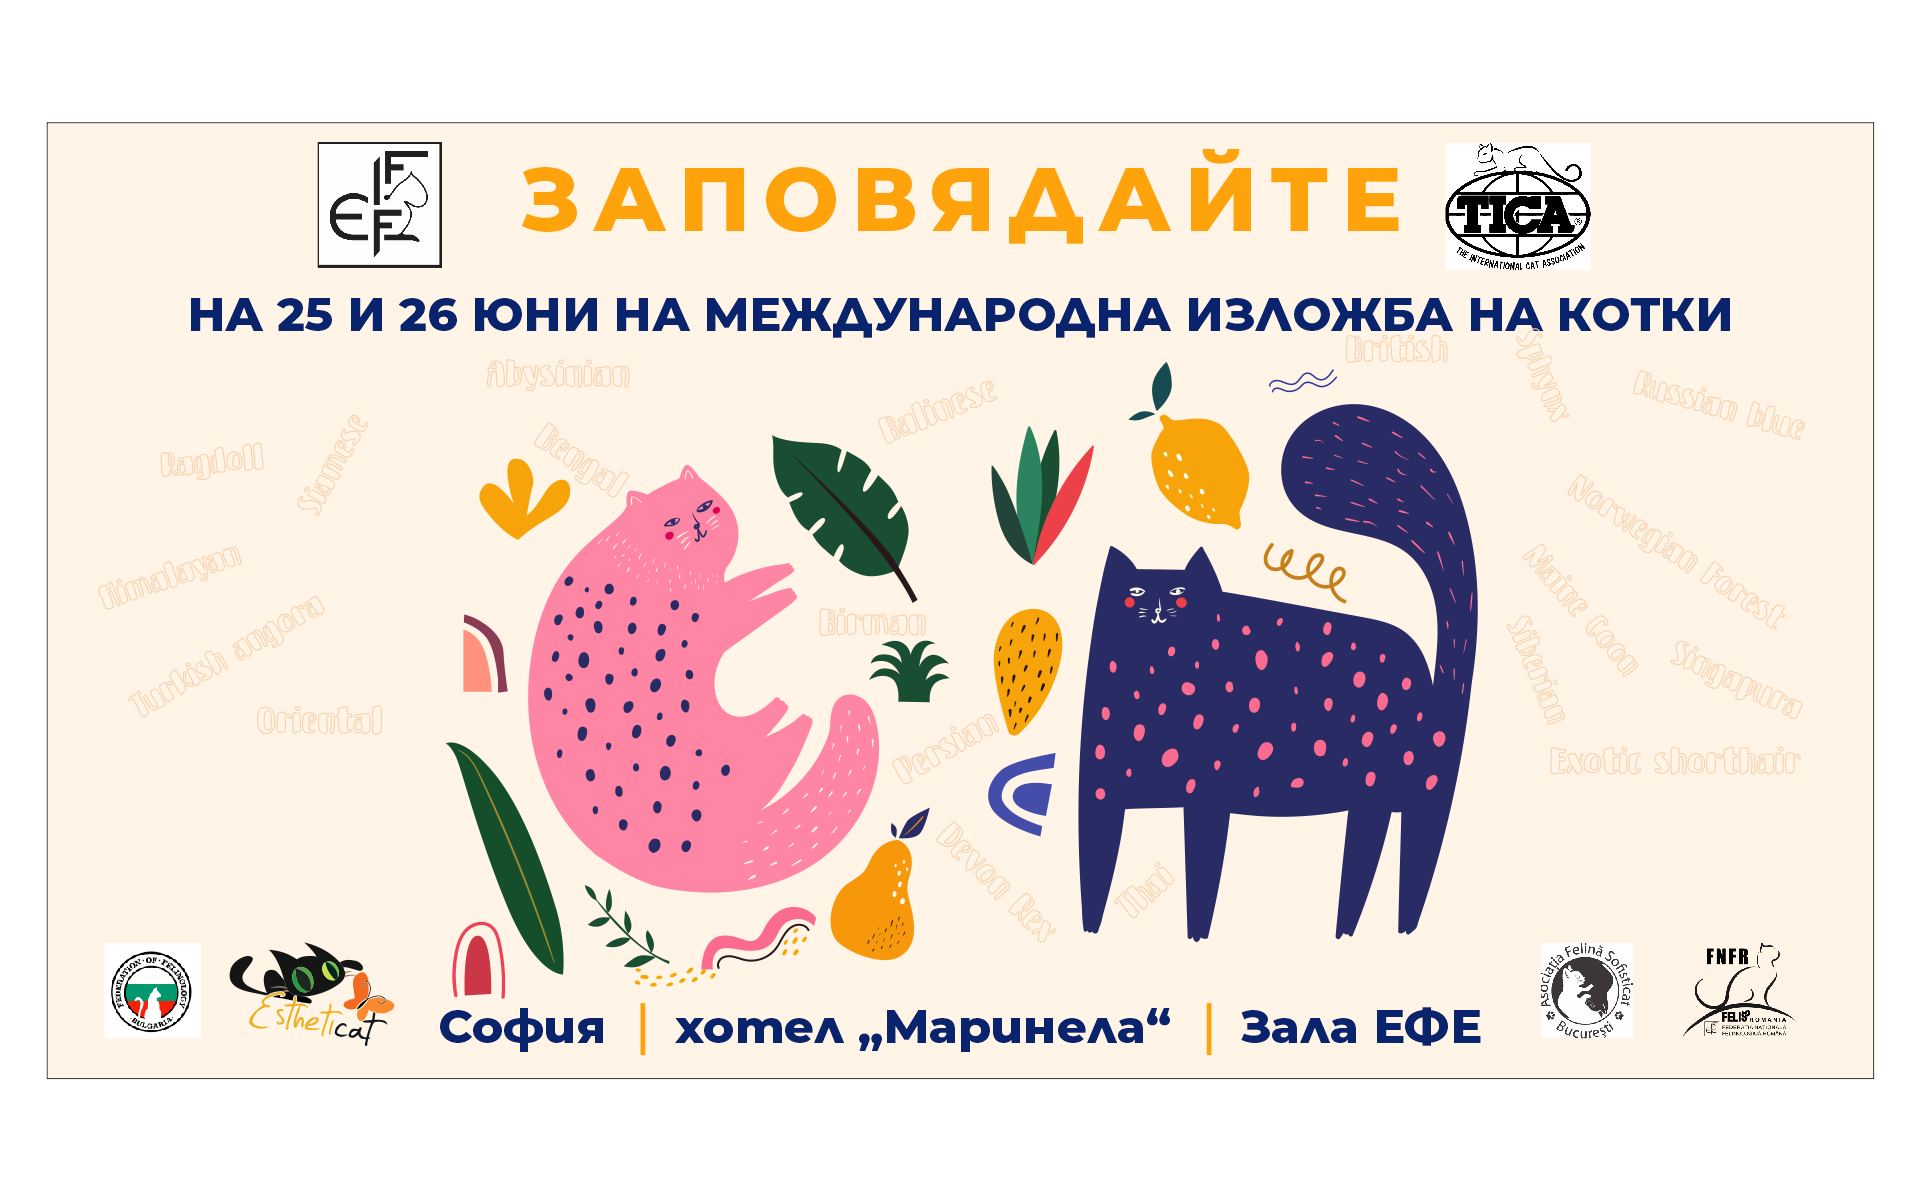 Международна изложба на котки "Hello Summer" 2022